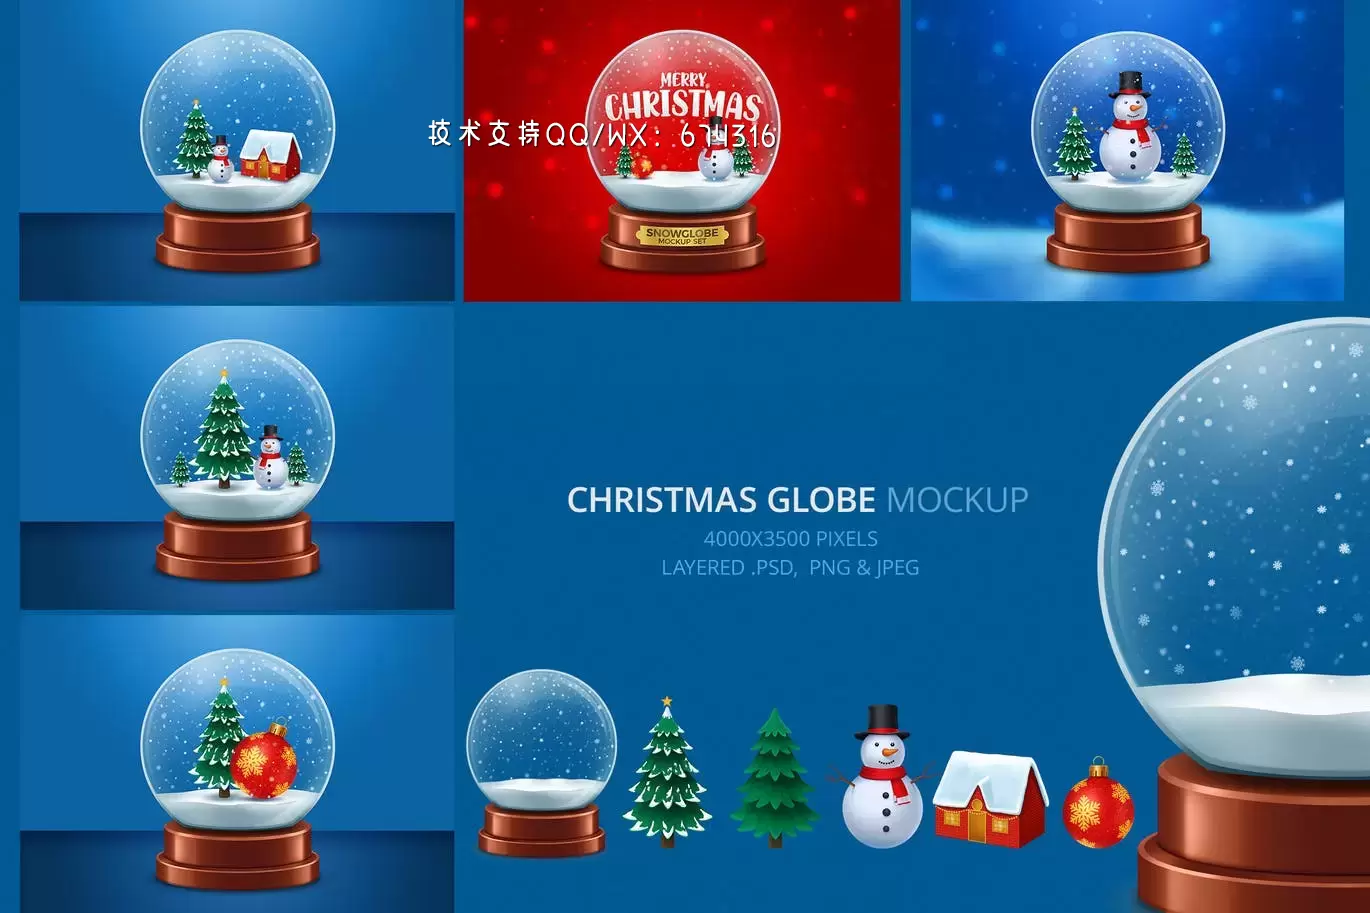 圣诞雪花玻璃球模型(PSD,PNG,JPG)下载